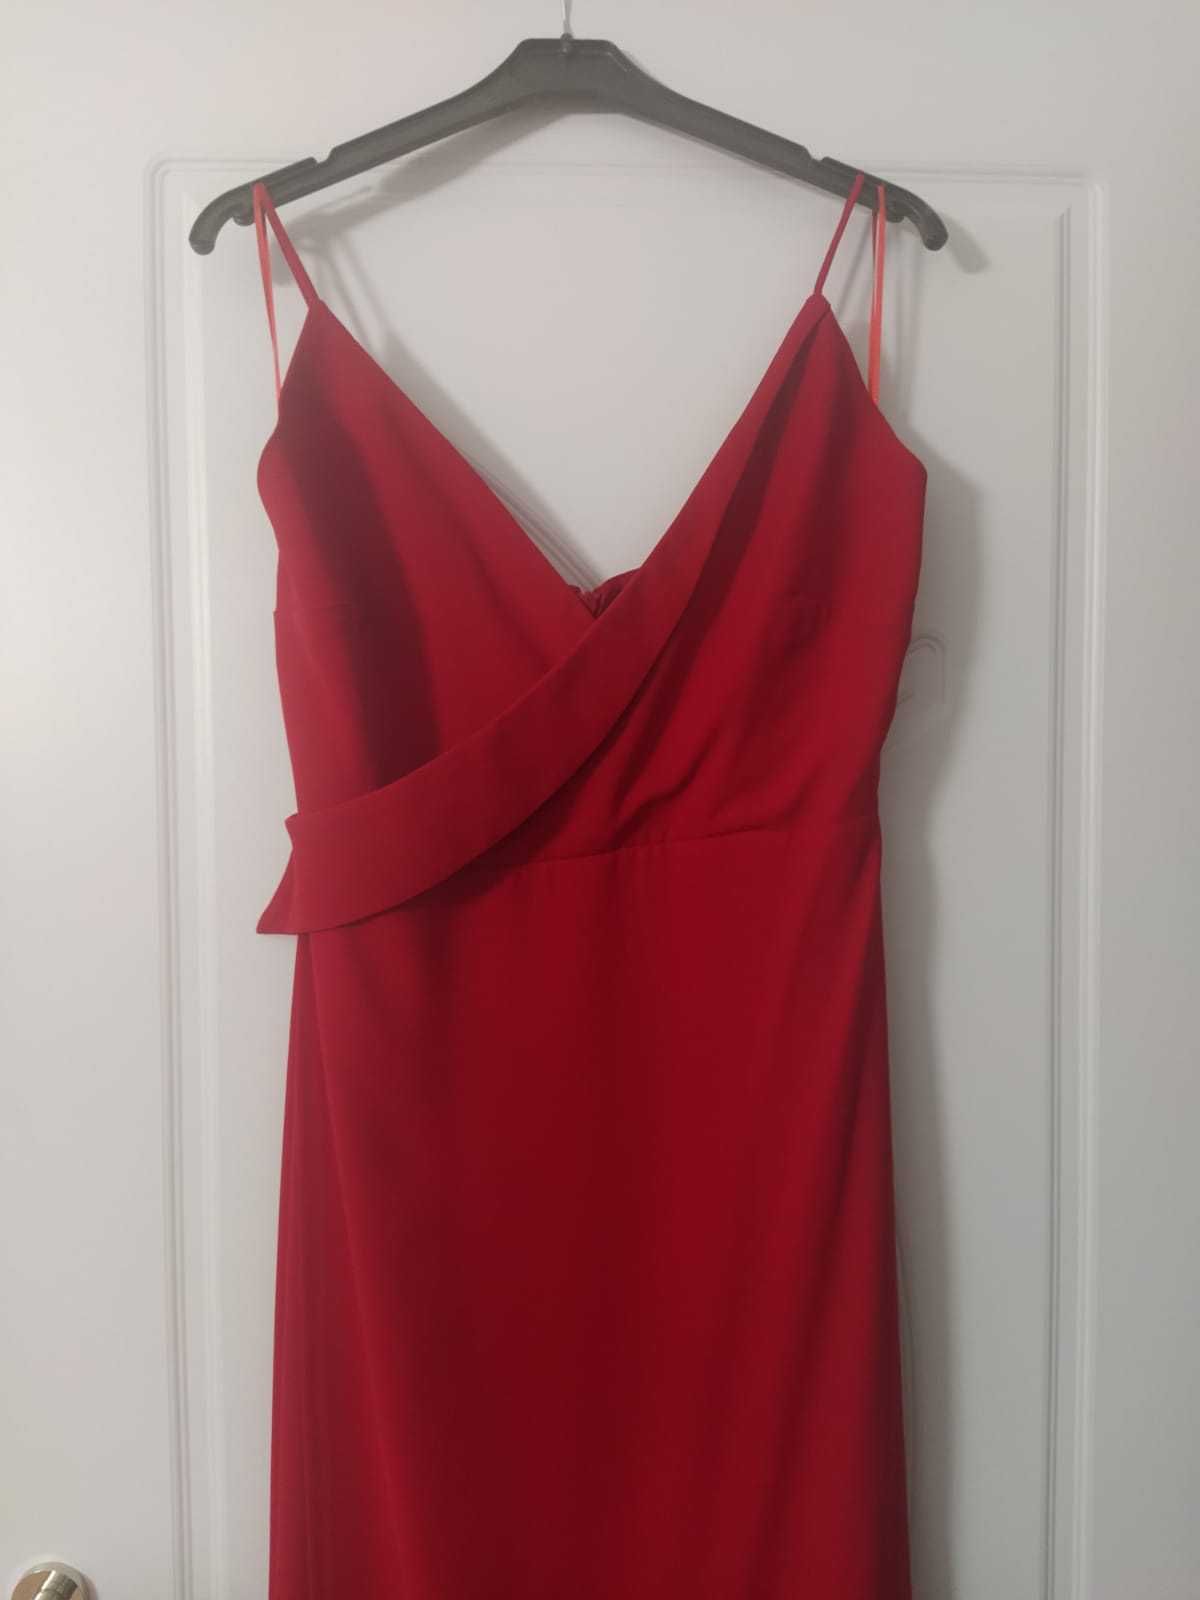 Официална/Бална червена рокля